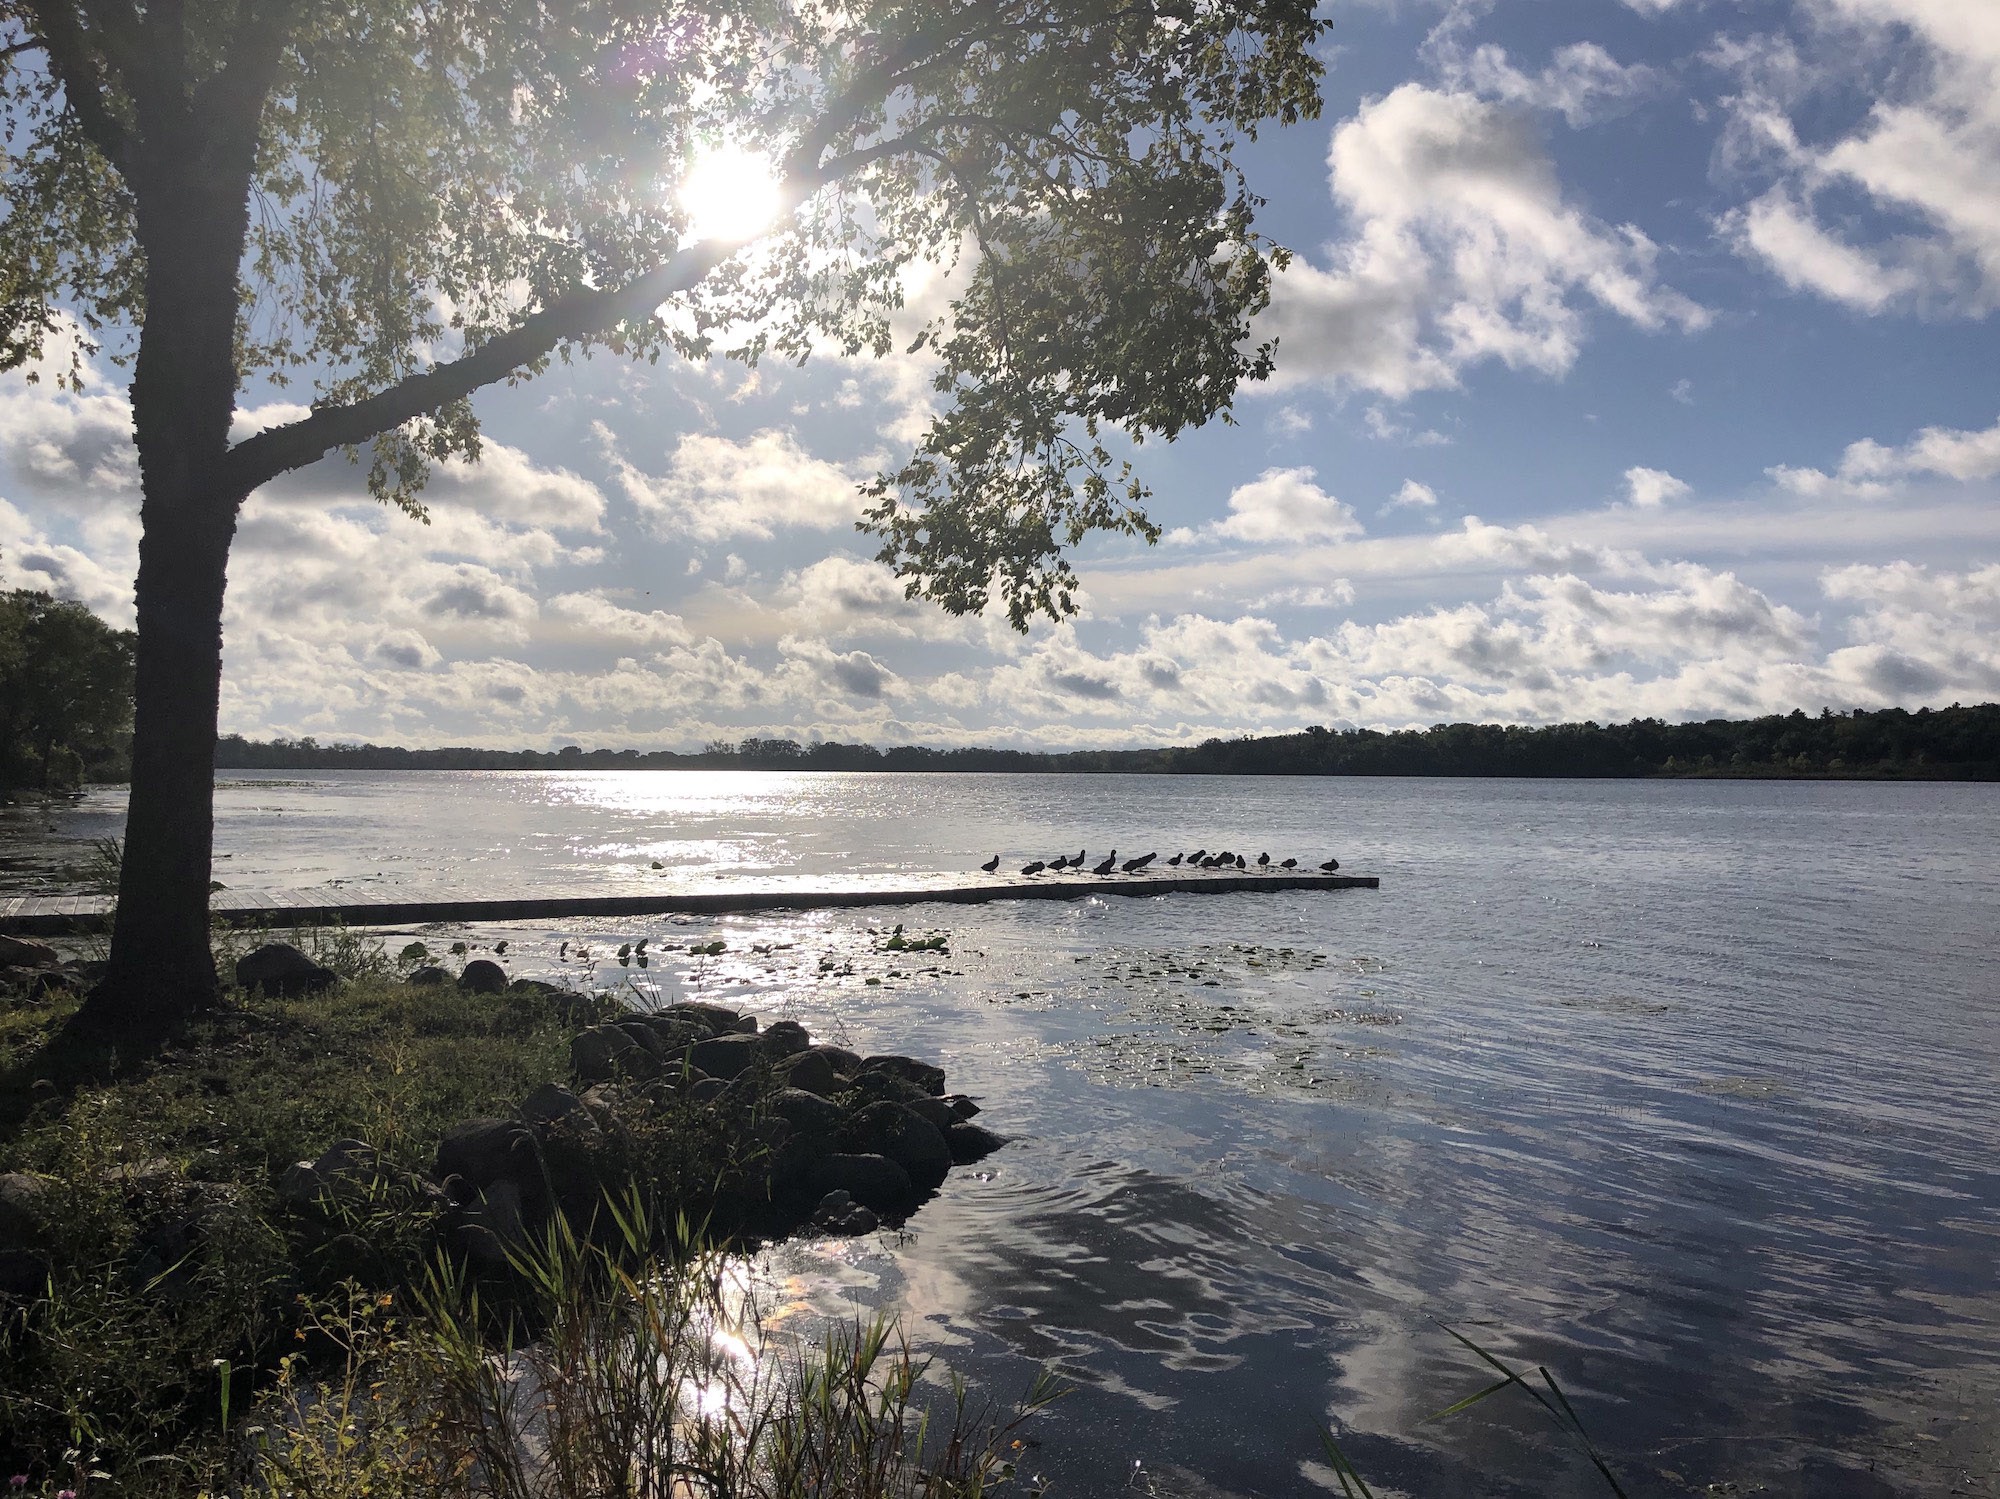 Lake Wingra on September 13, 2019.